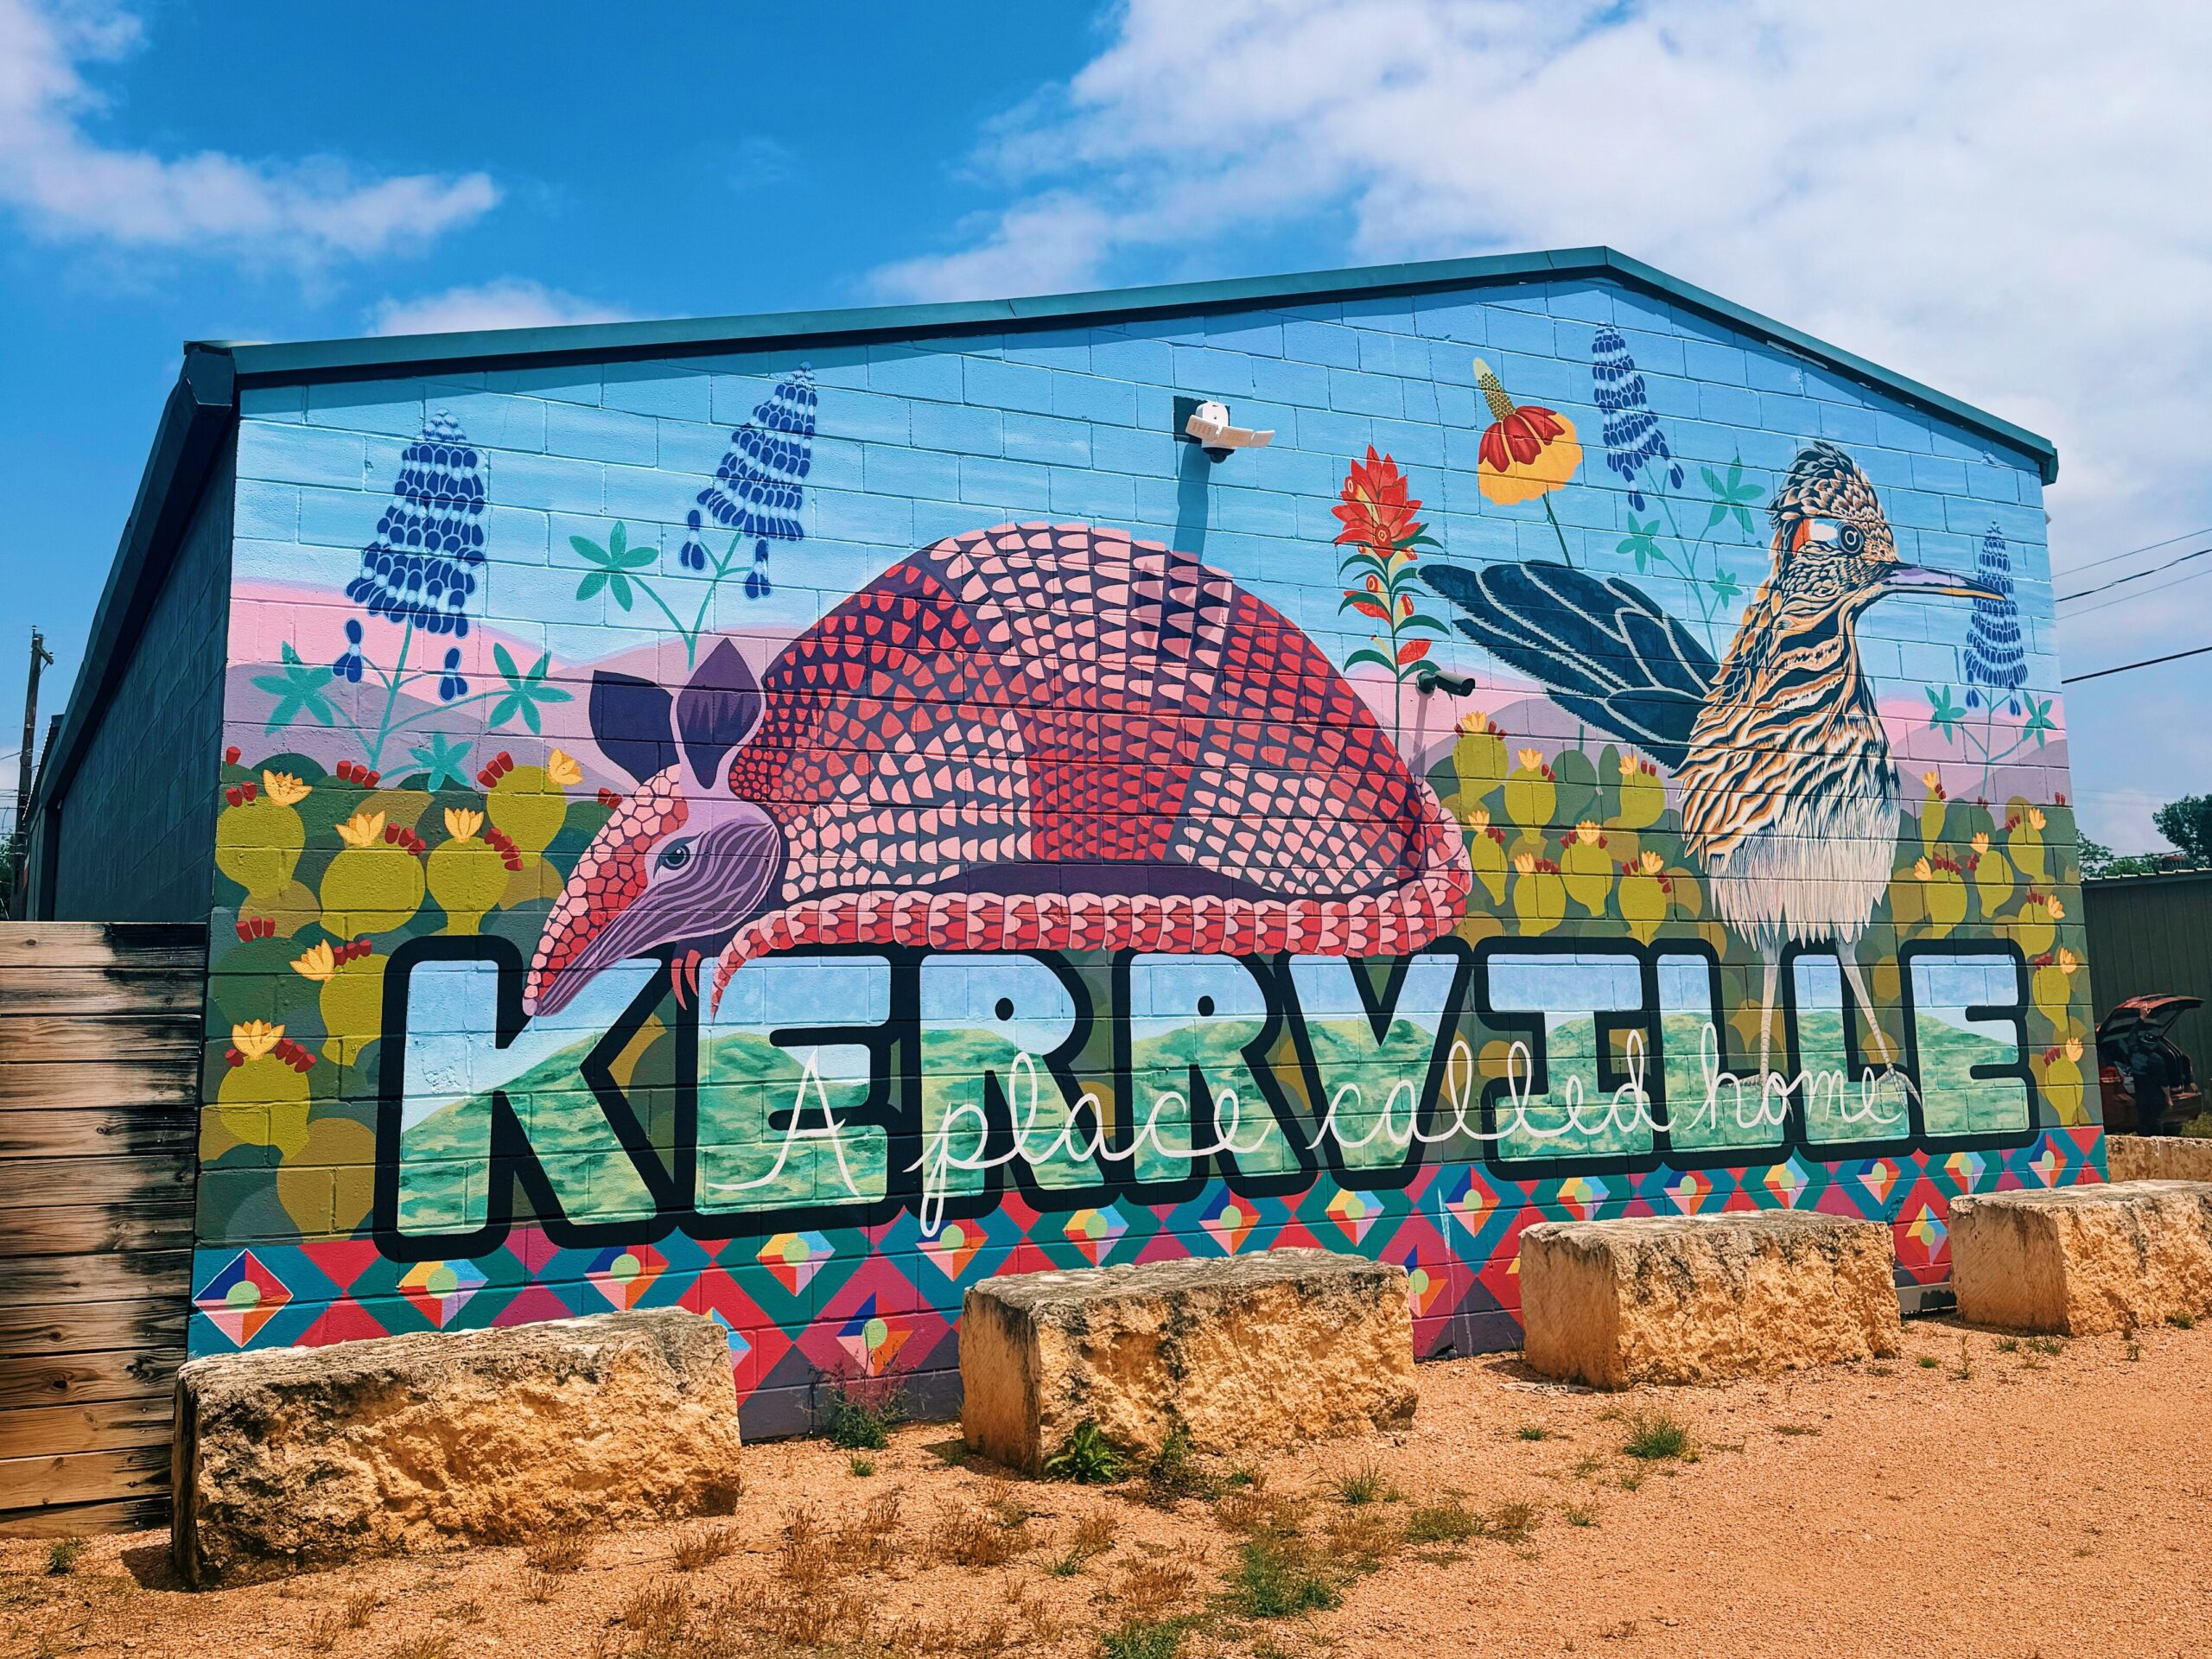 Things to do in Kerrville, TX: Kerrville Area Public Art Trail